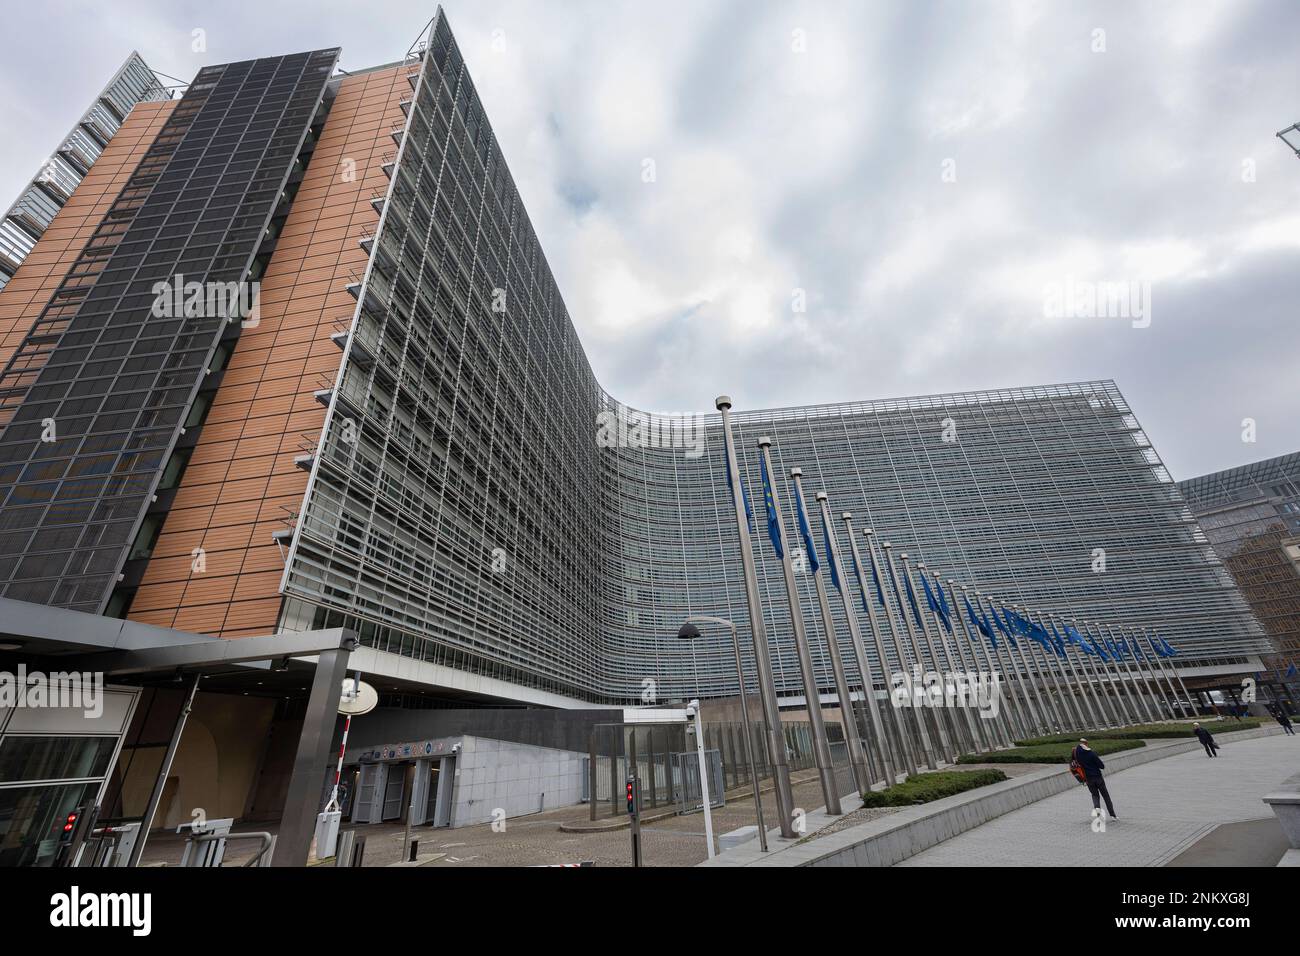 BRUXELLES, Belgio - 23 febbraio 2023: Edificio Berlaymont, sede della Commissione europea, con bandiere che soffiano nel vento davanti ad esso Foto Stock